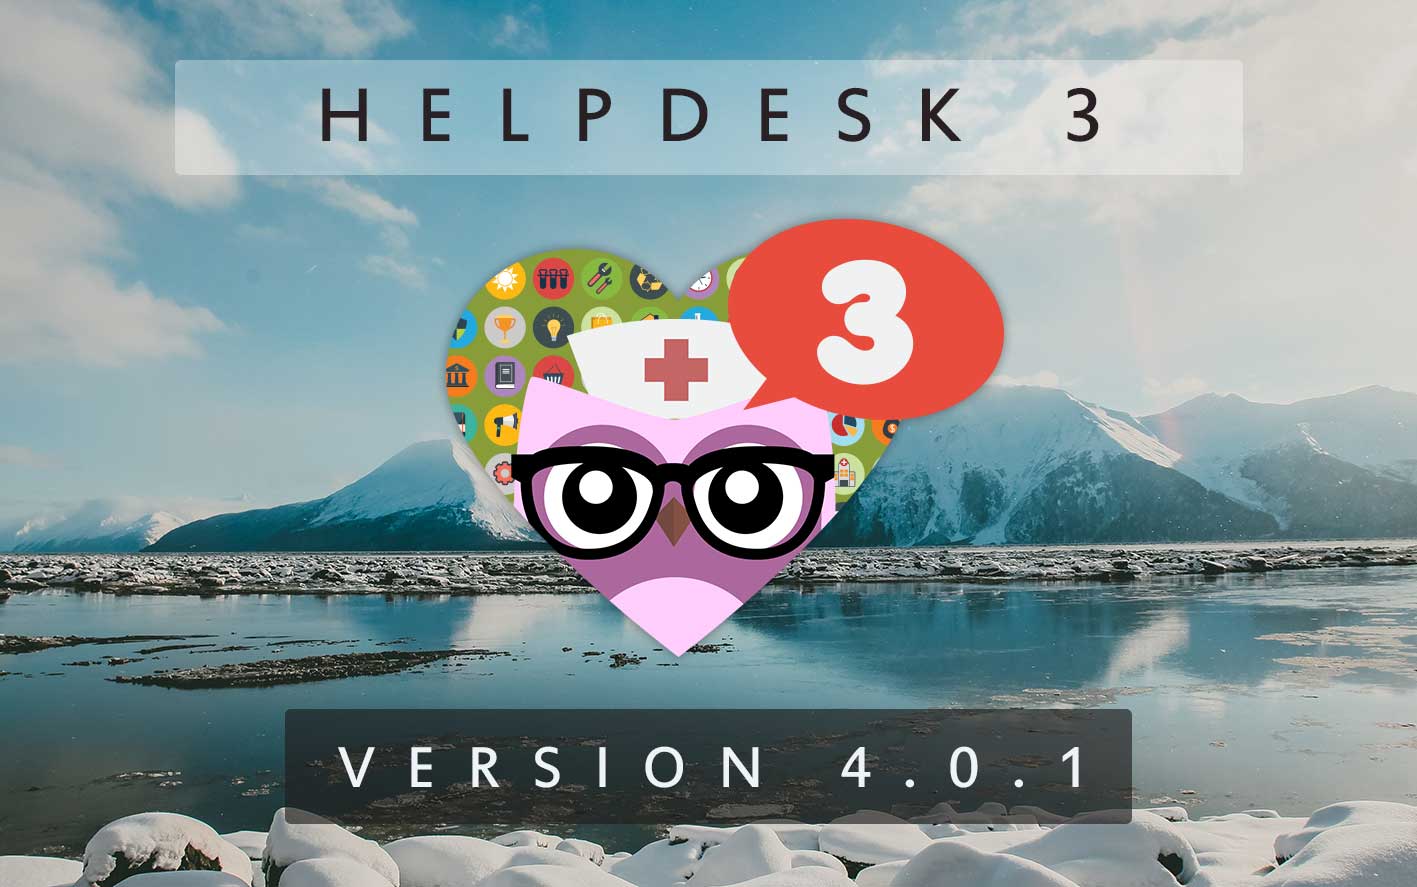 HelpDesk 3 - Version 4.0.1